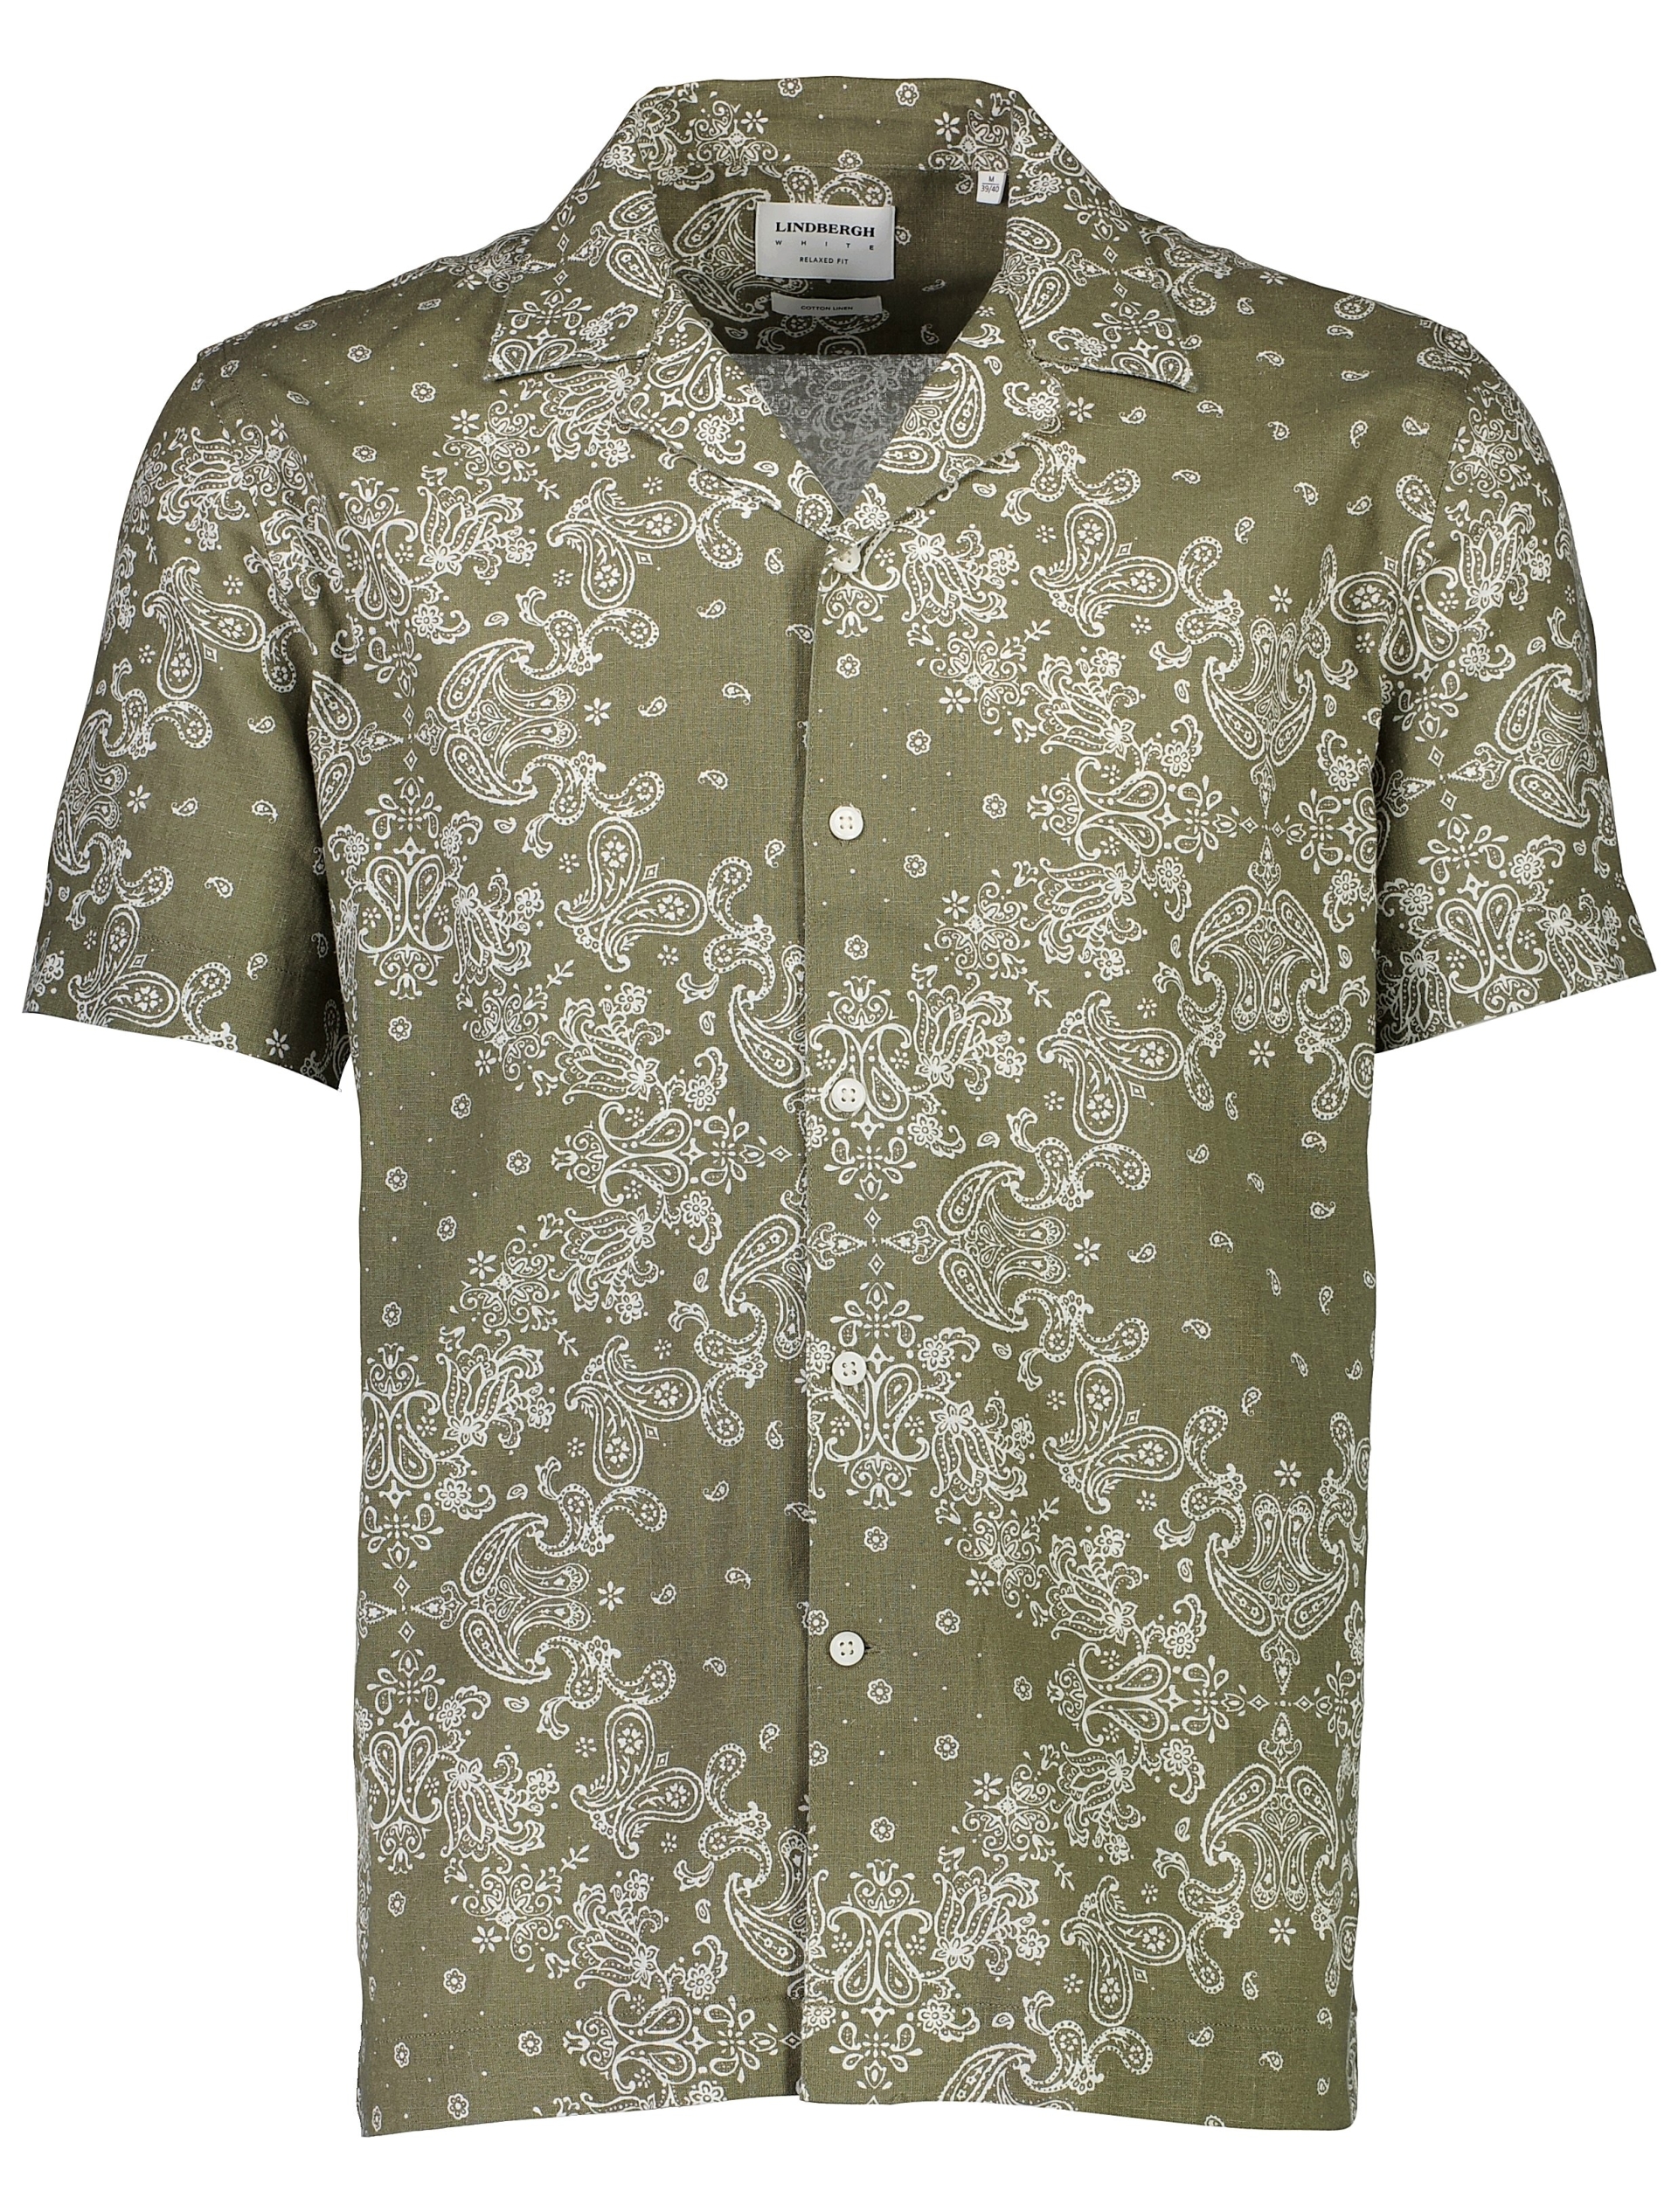 Lindbergh Linen shirt green / lt army